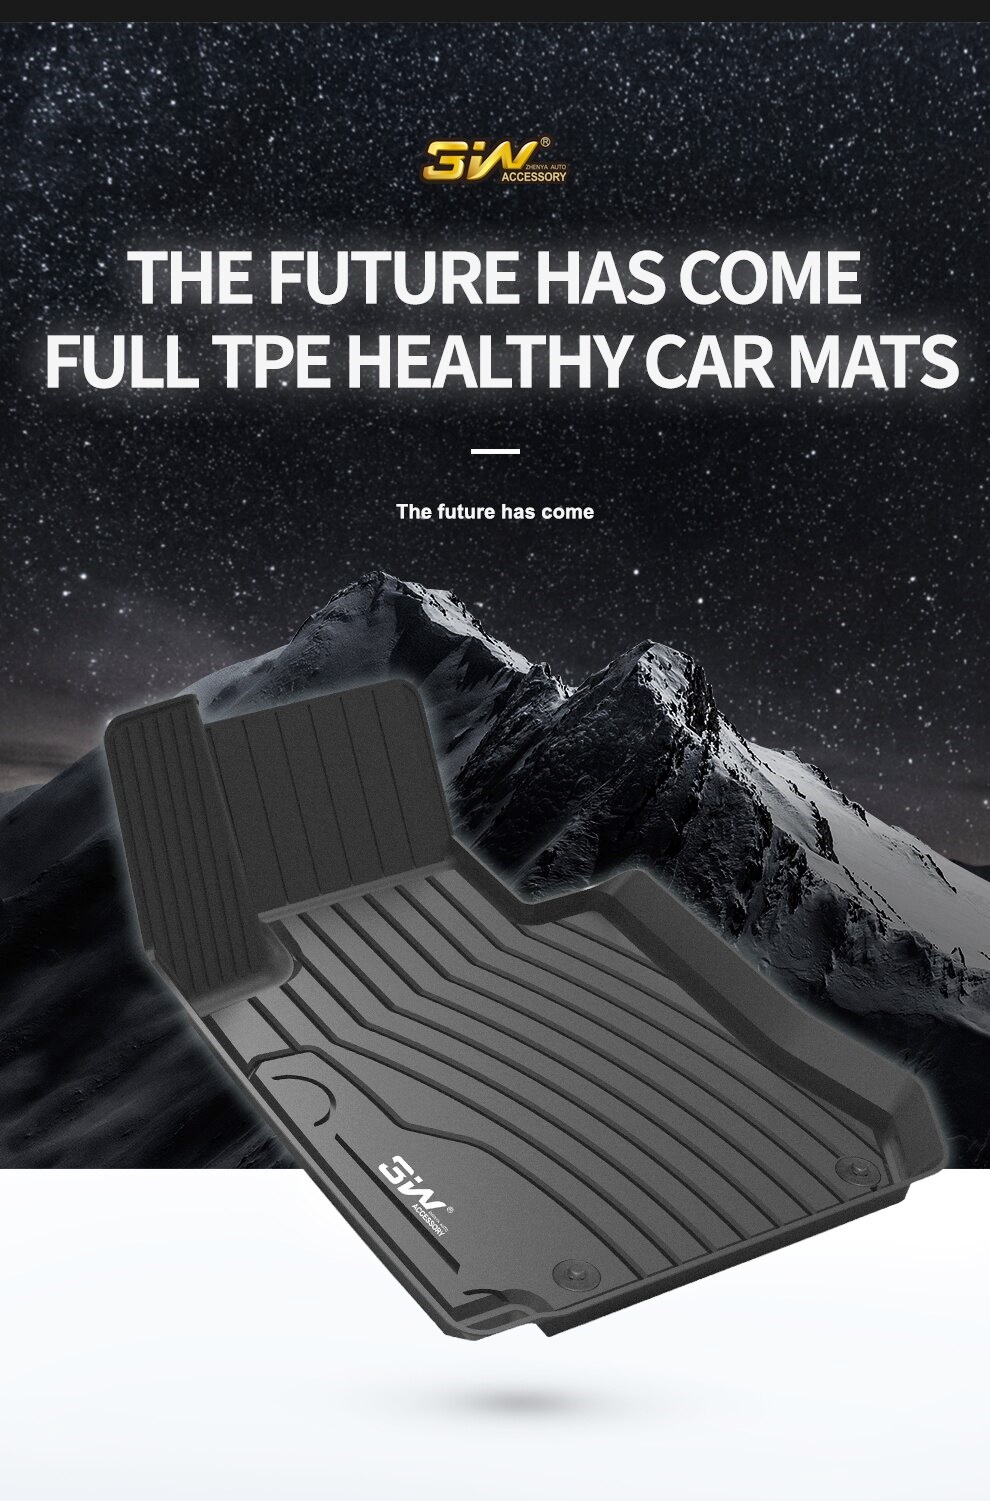 Thảm lót sàn xe ô tô Mercedes A Nhãn hiệu Macsim 3W chất liệu nhựa TPE đúc khuôn cao cấp - màu đen